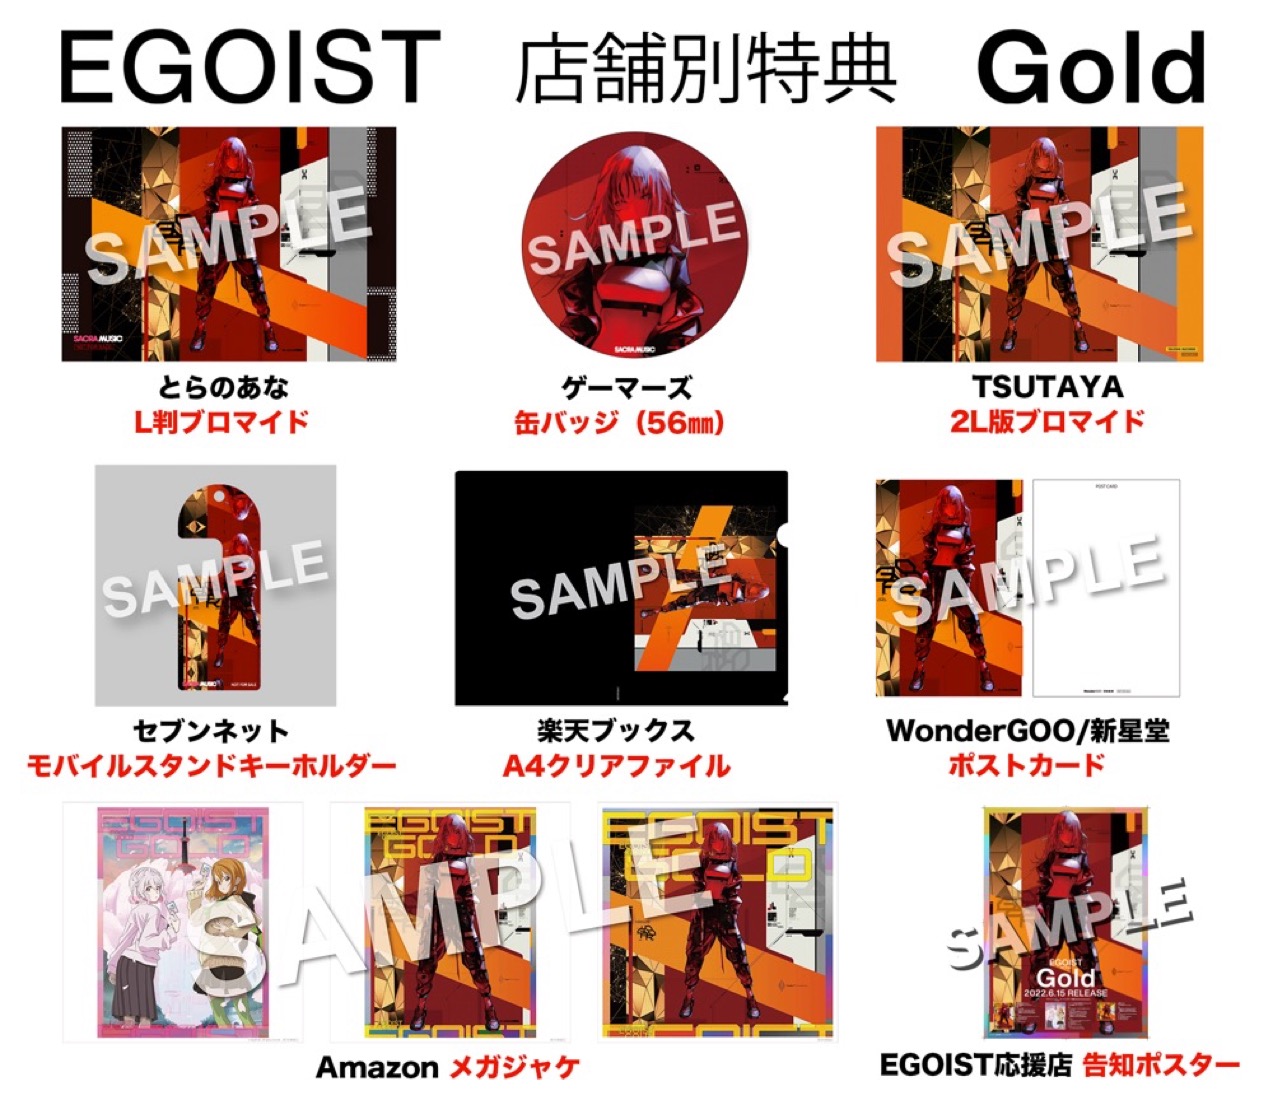 EGOIST、10周年イヤー第2弾シングル「Gold」先着購入者特典の絵柄を公開